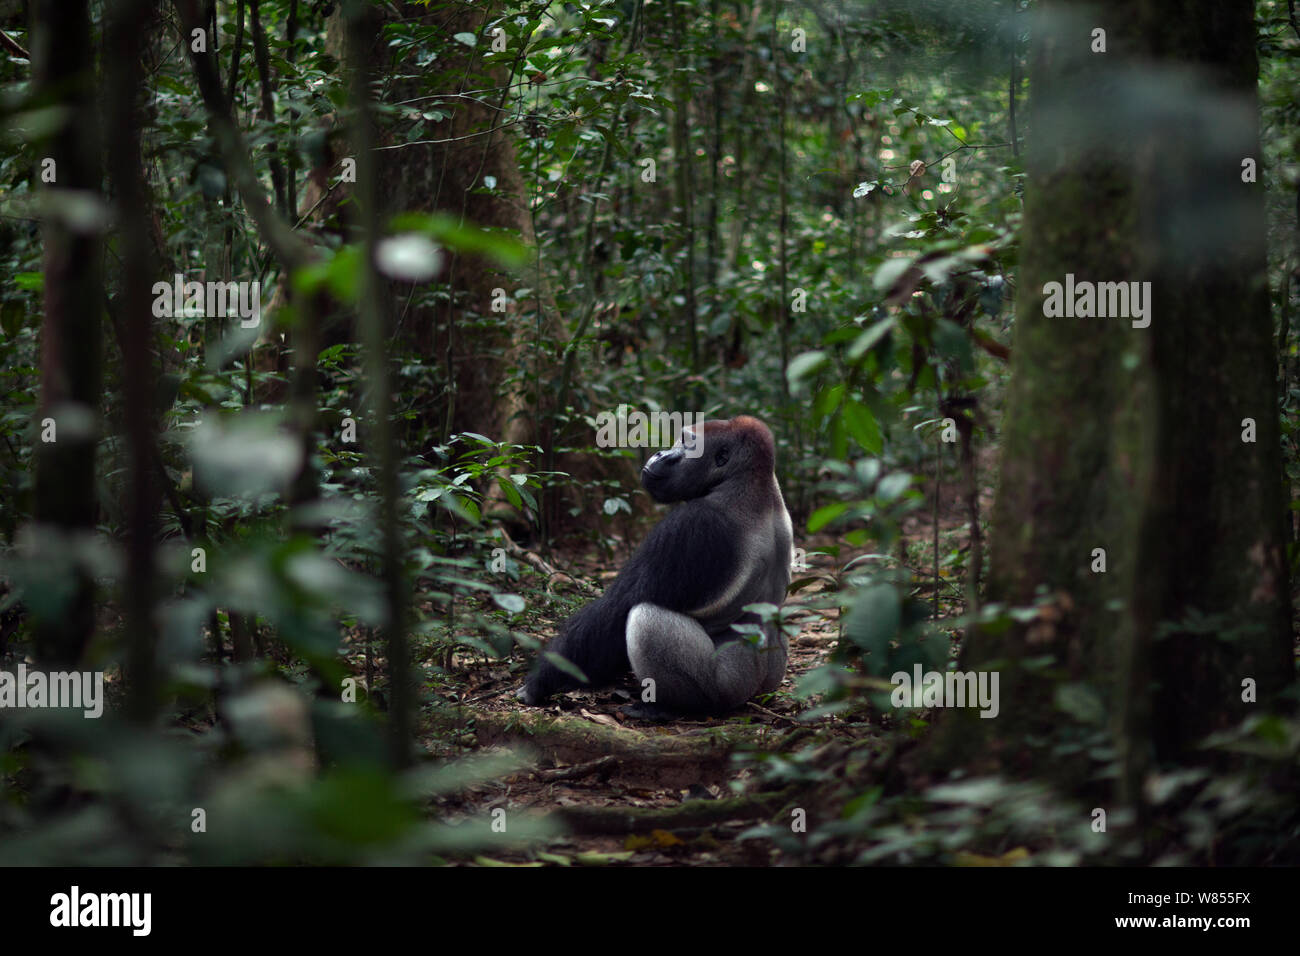 Pianura occidentale (gorilla Gorilla gorilla gorilla) maschio dominante silverback 'Makumba' invecchiato 32 anni seduto in una radura, Bai Hokou, Dzanga Sangha densa speciale riserva forestale, Repubblica Centrafricana. Dicembre 2011. Foto Stock